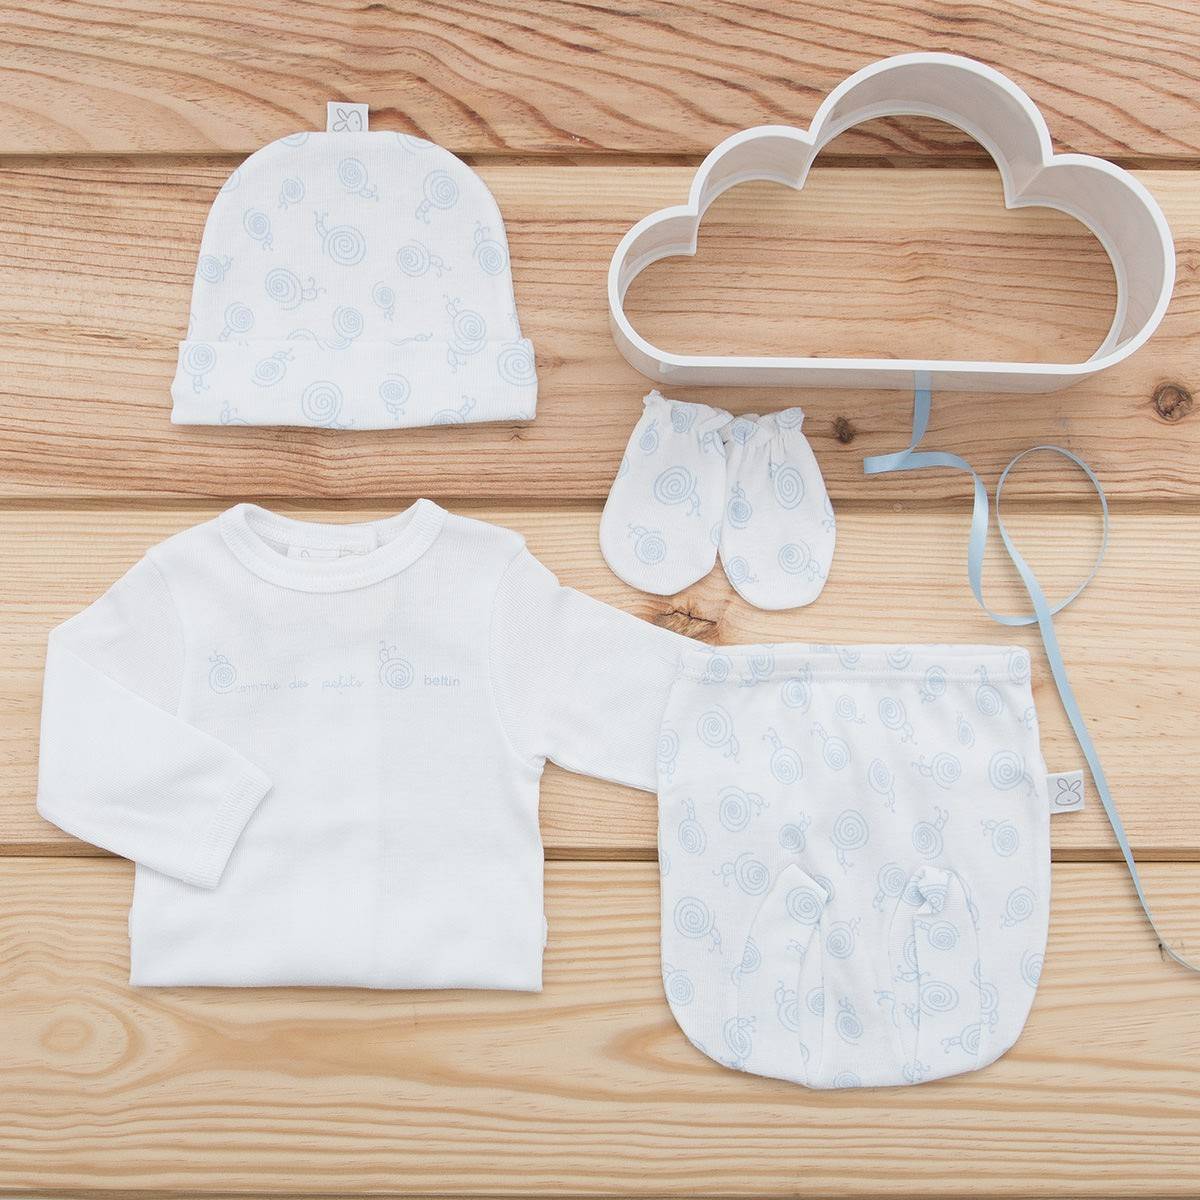 Pack de prendas para bebé recién nacido Beltin newborn BUHO GRIS